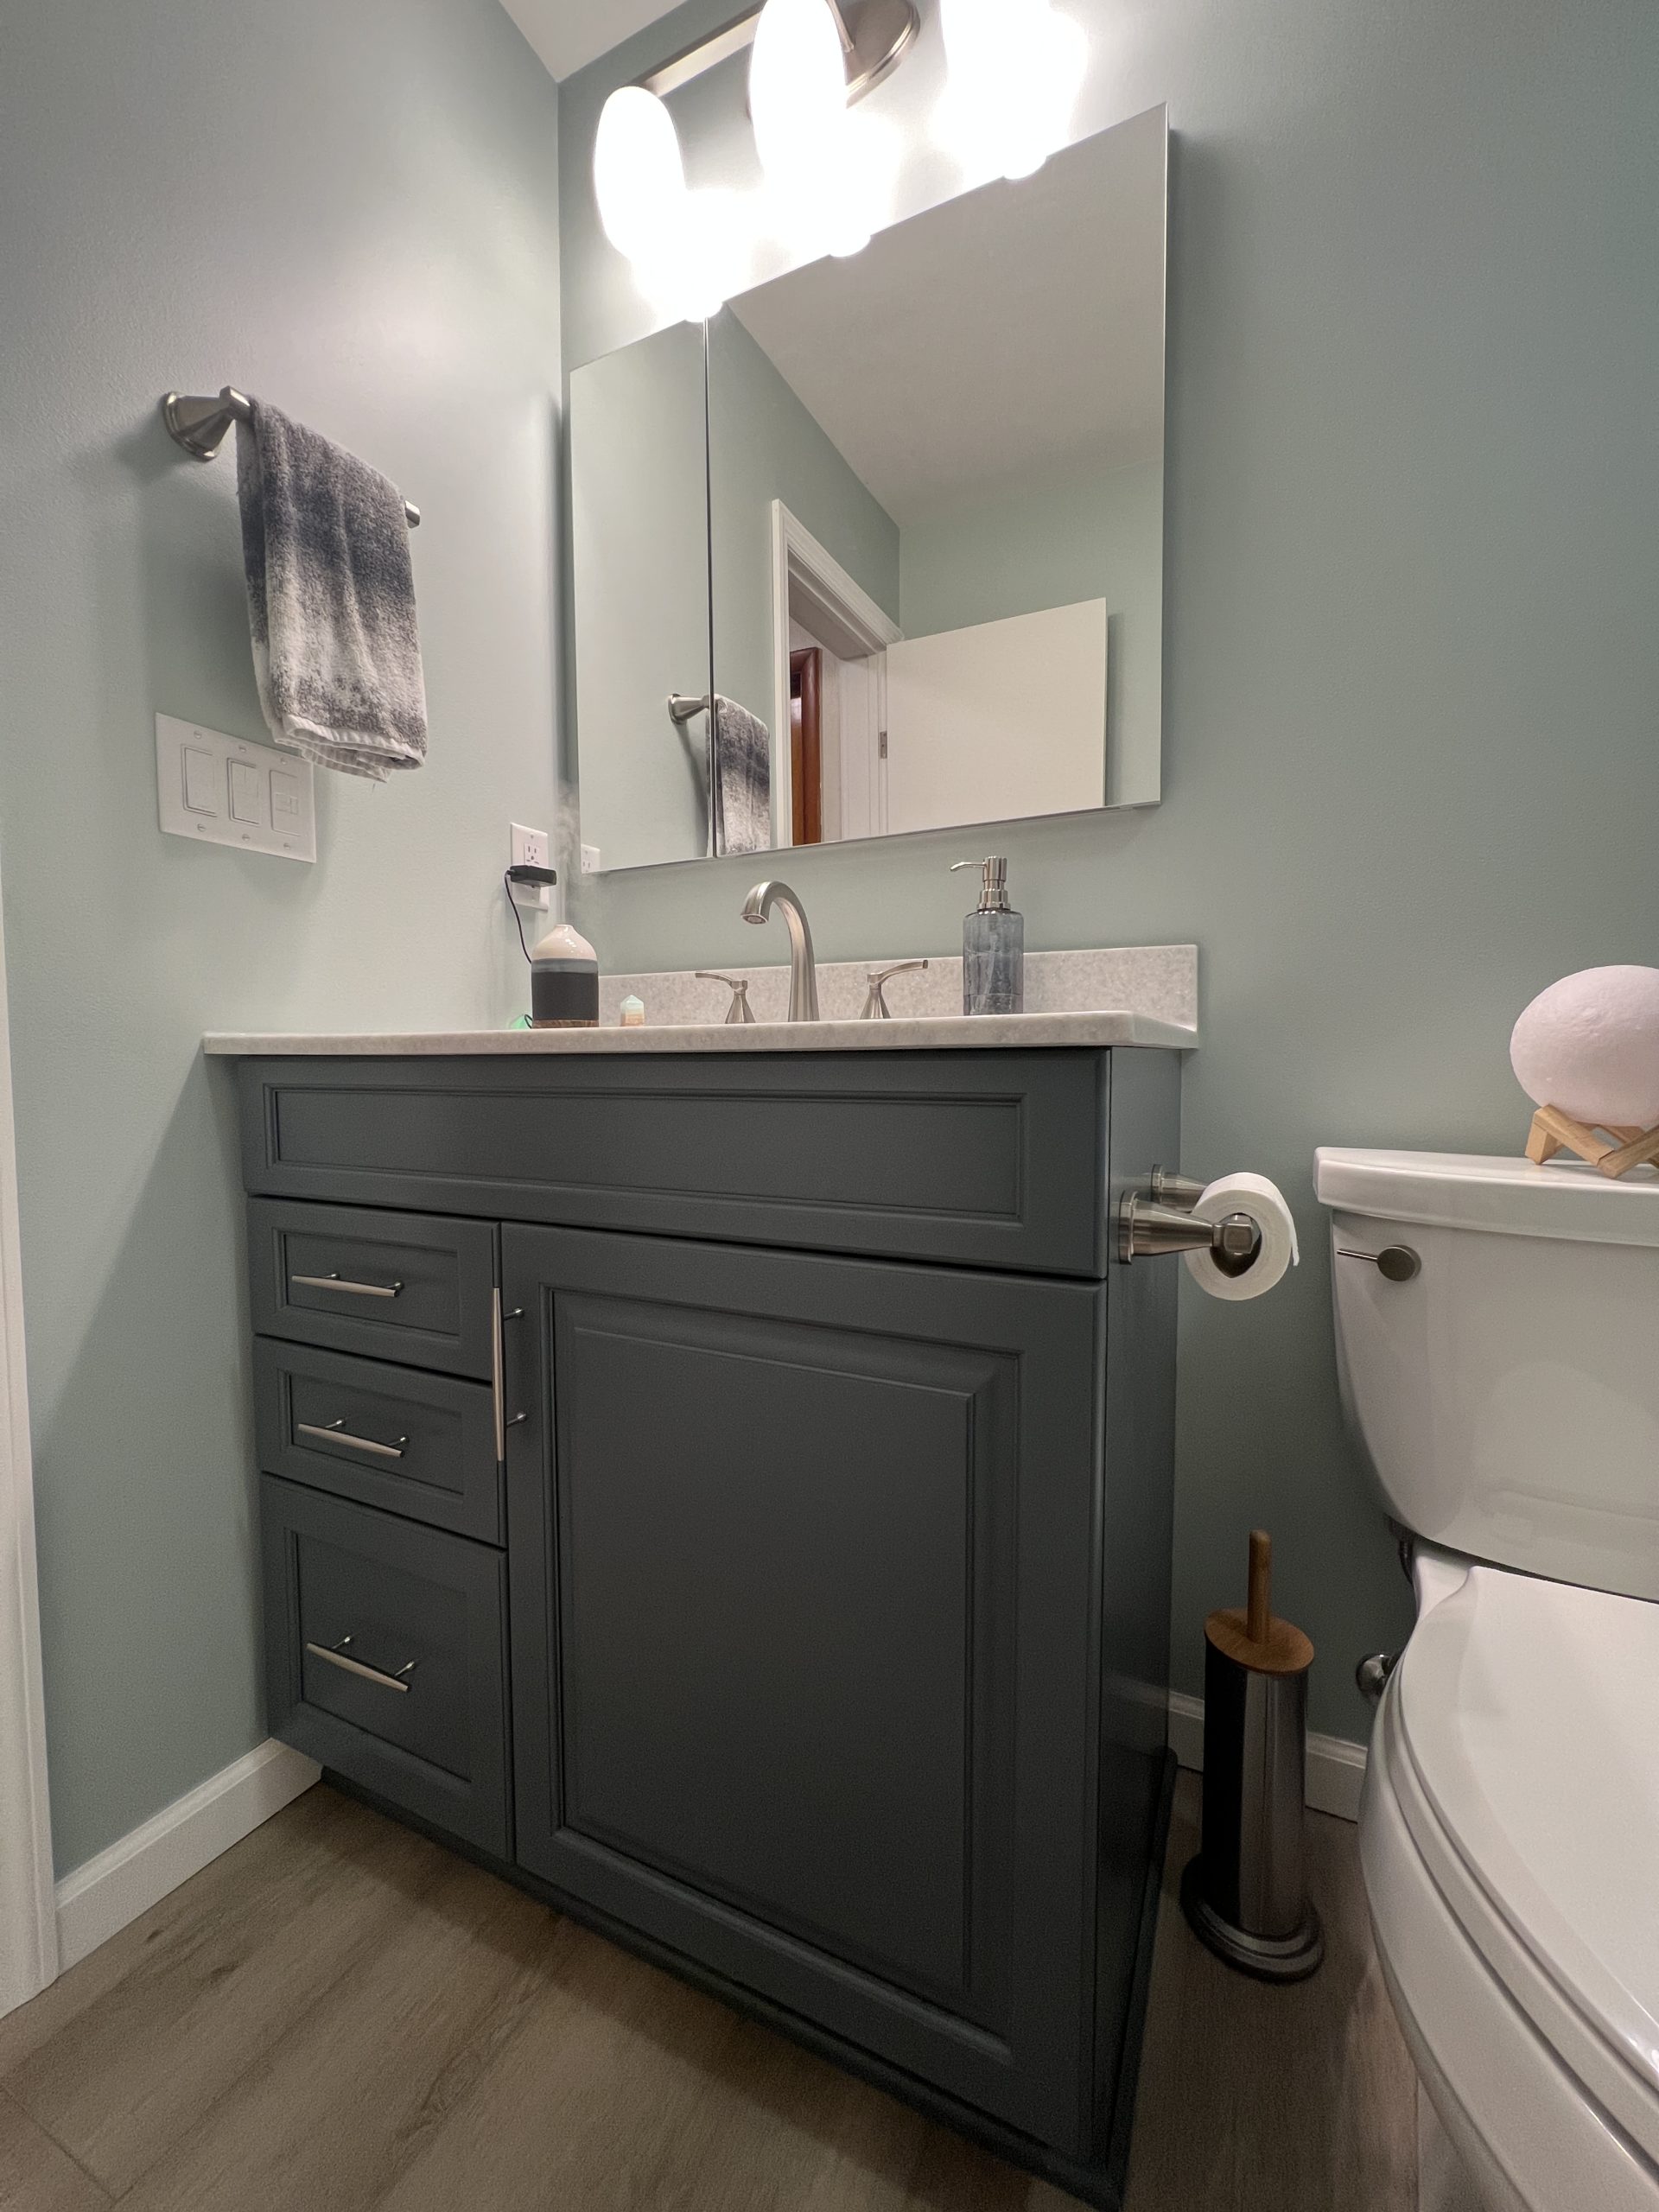  |  Dark Green Vanity Bathroom Vanity and Light Fixture